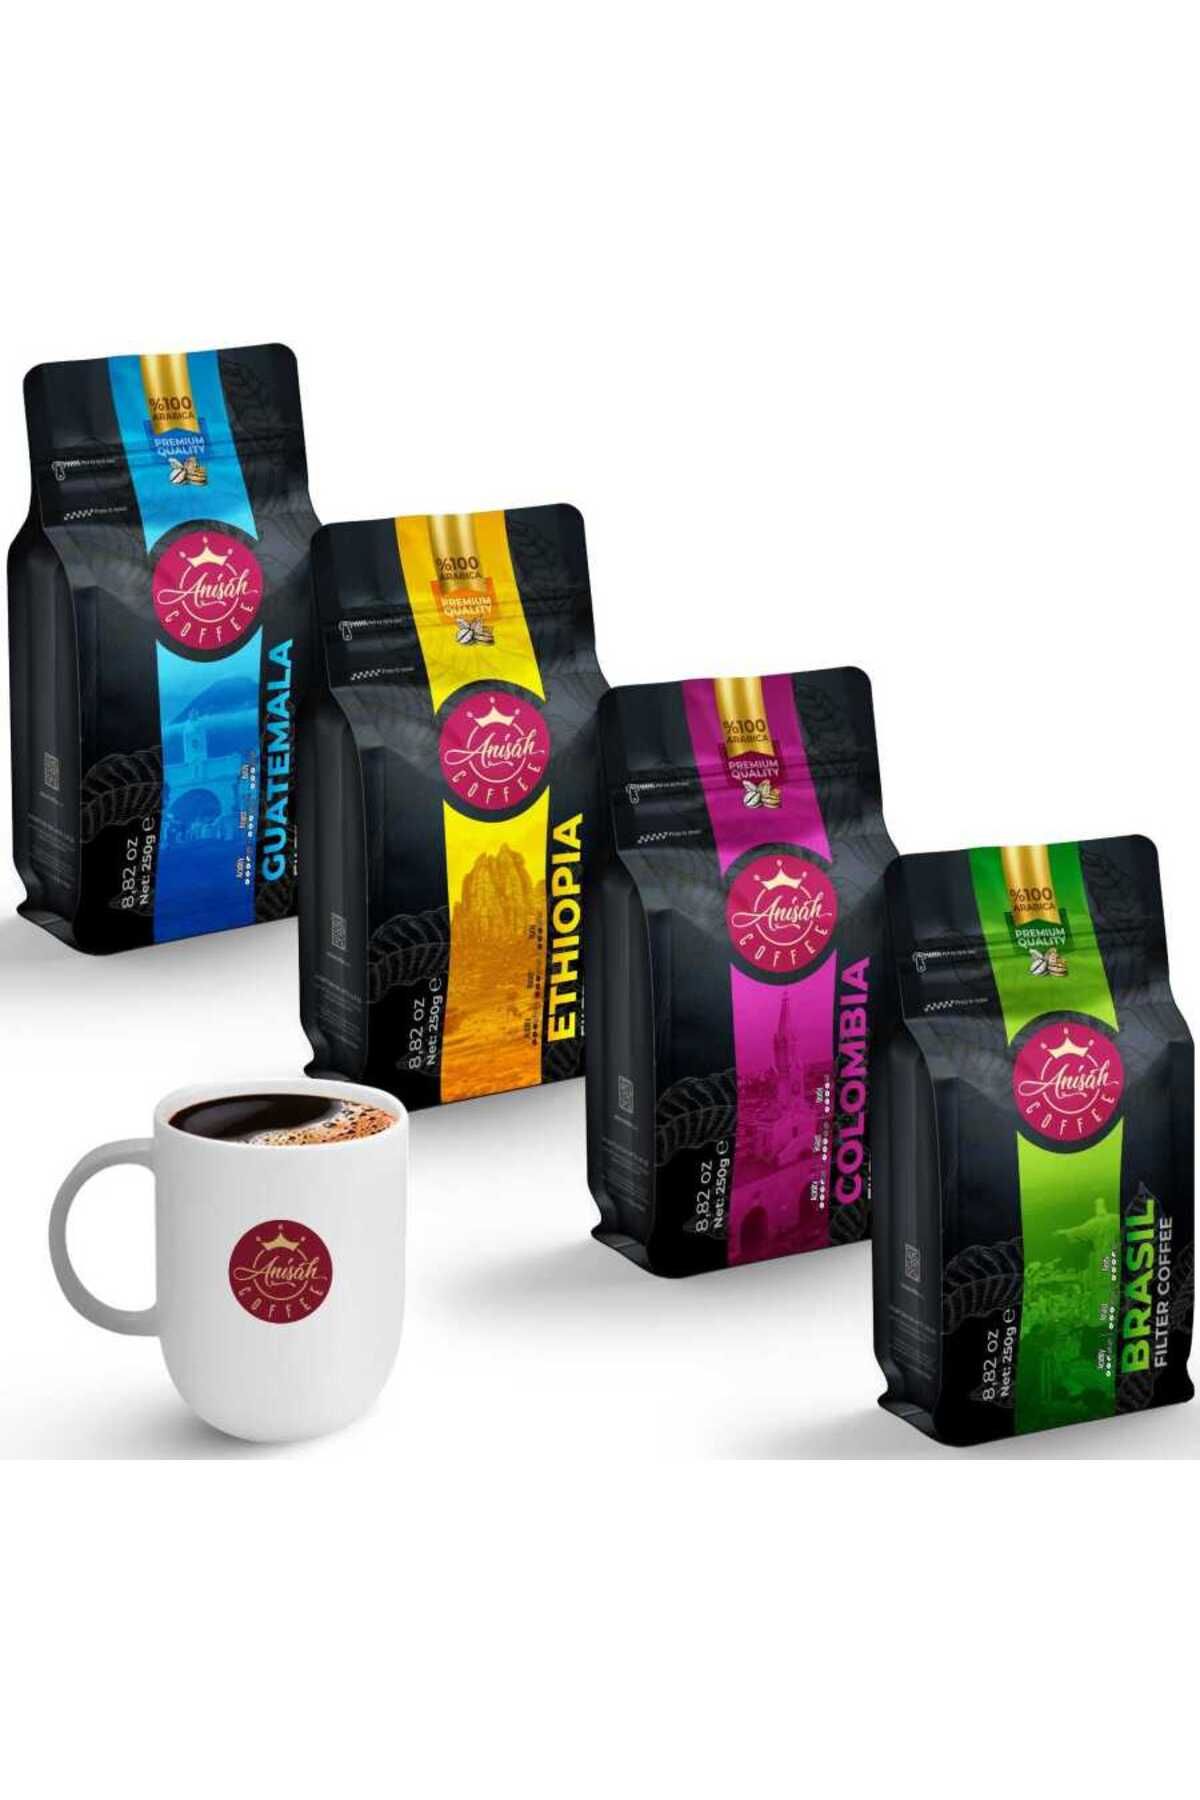 Anisah Coffee Dünya Kahveleri Keşif Seti 4 X 250 gram (ÖĞÜTÜLMÜŞ) | Filtre Kahve | 300 Cl Kupa Bardak Hediyeli